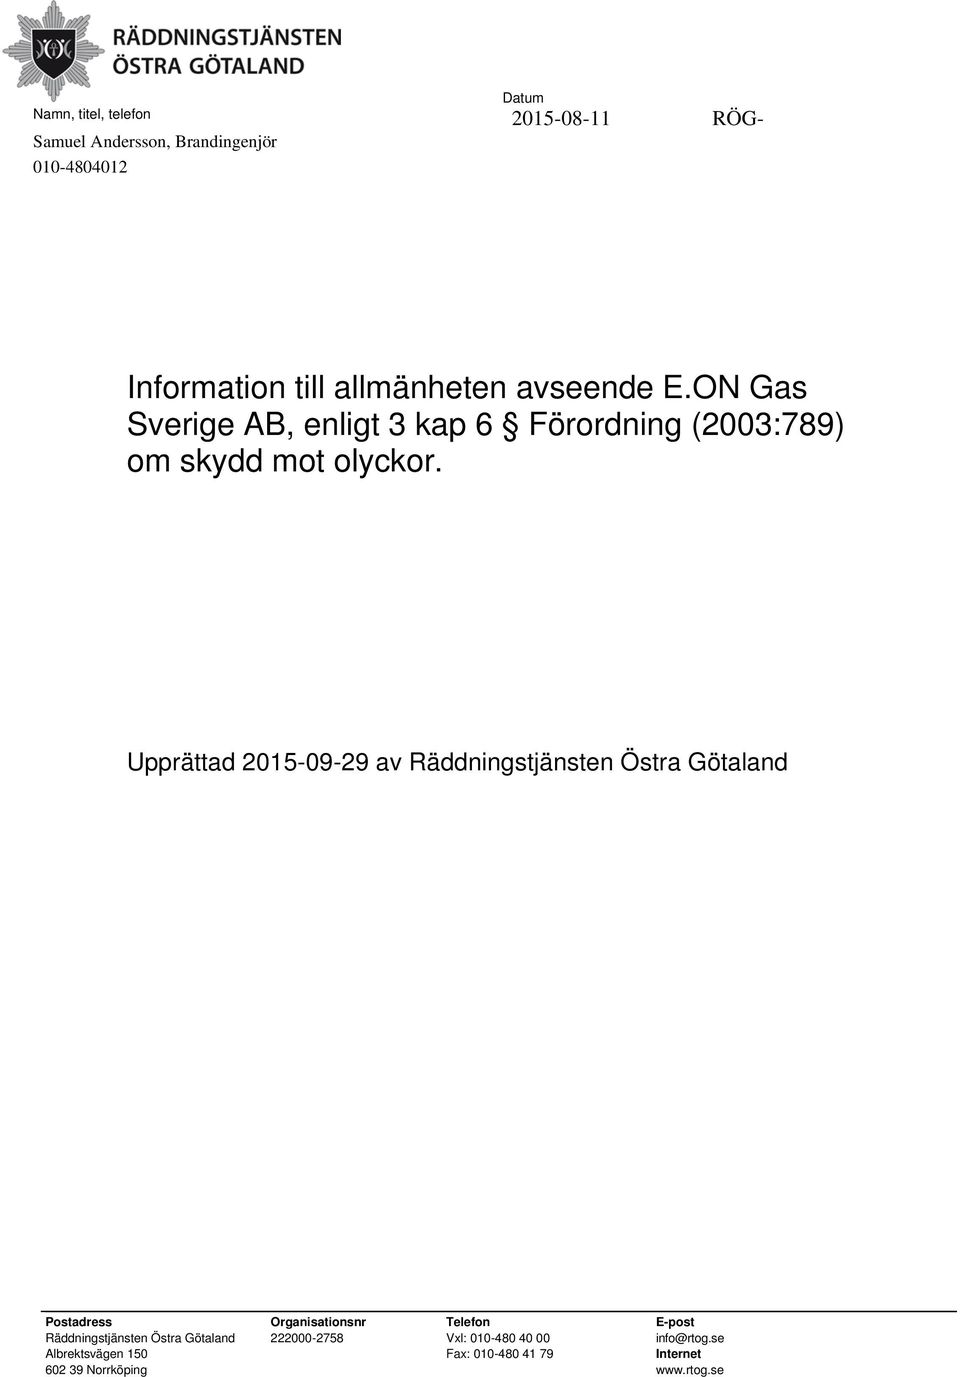 ON Gas Sverige AB, enligt 3 kap 6 Förordning (2003:789) om skydd